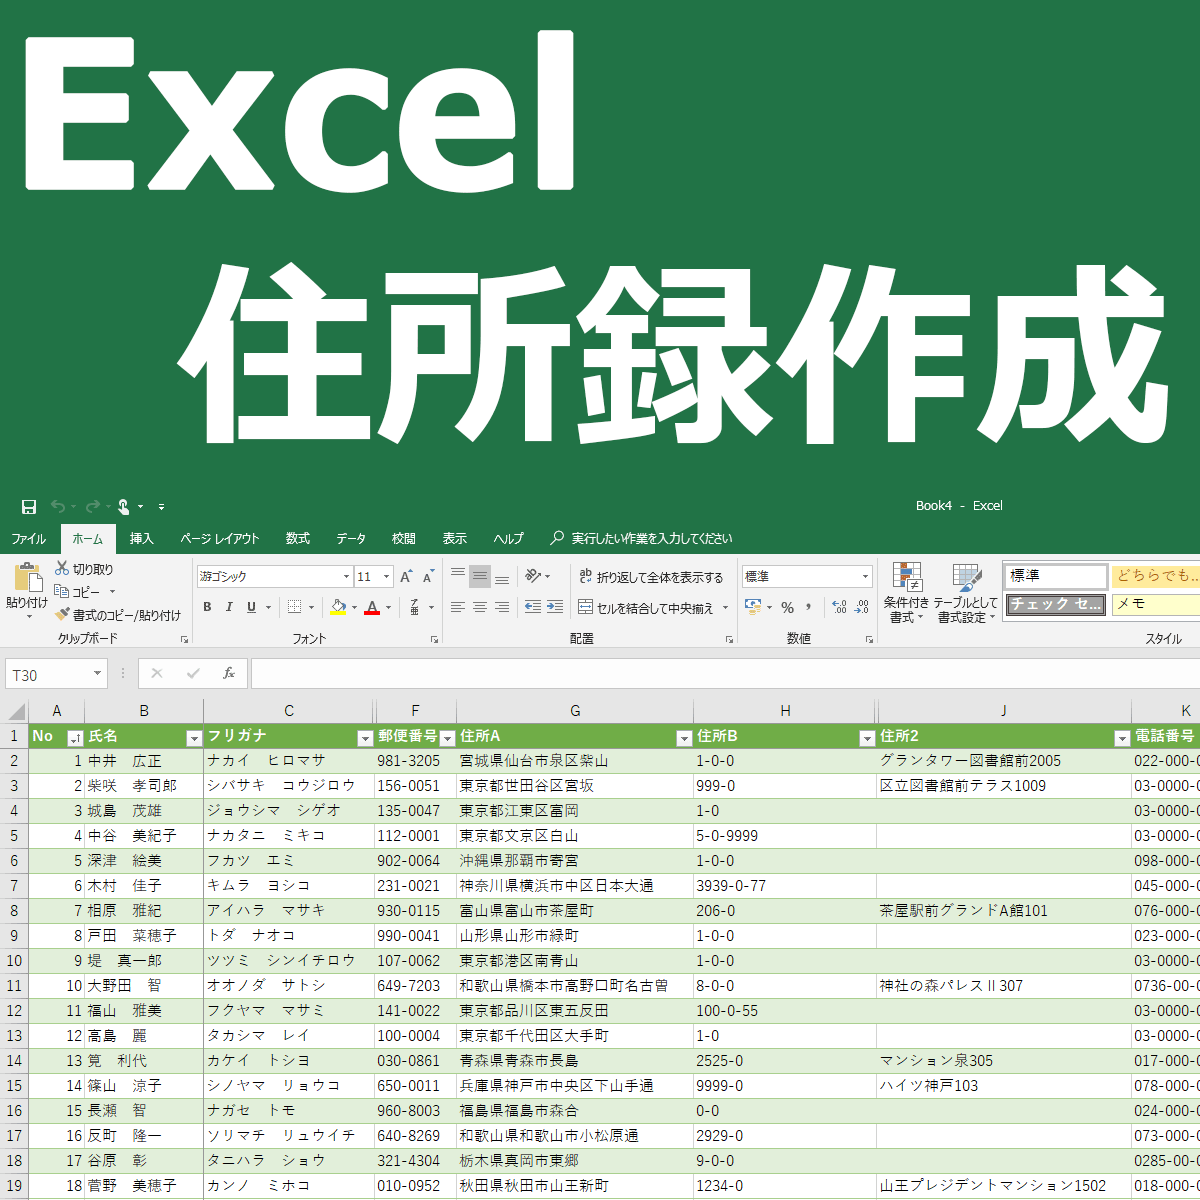 エクセルで住所録作成 改訂版 Excel住所録の作り方